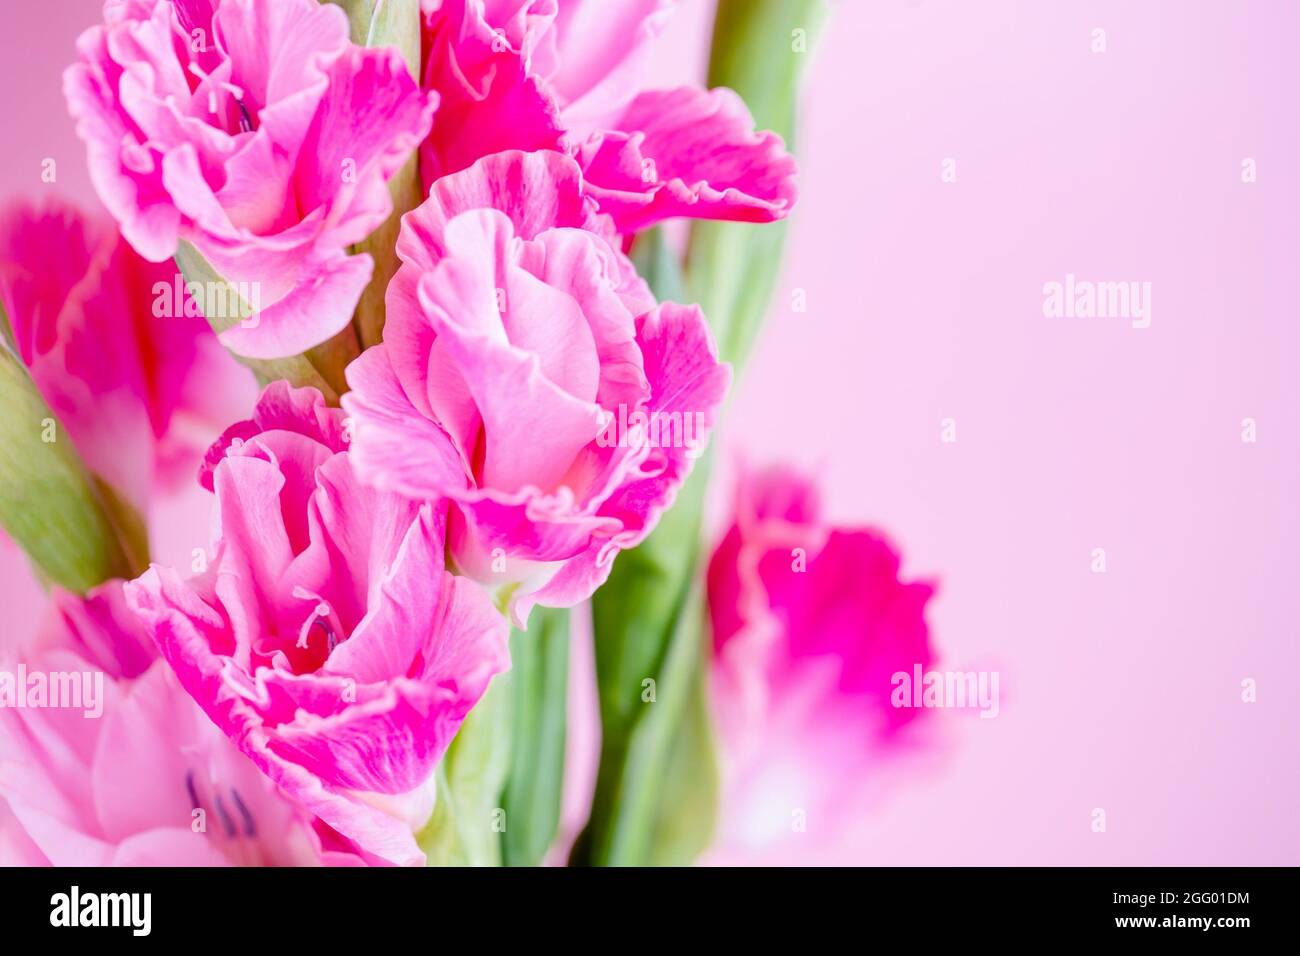 Le gladiolus rose magenta fleurit sur un fond rose pâle Banque D'Images